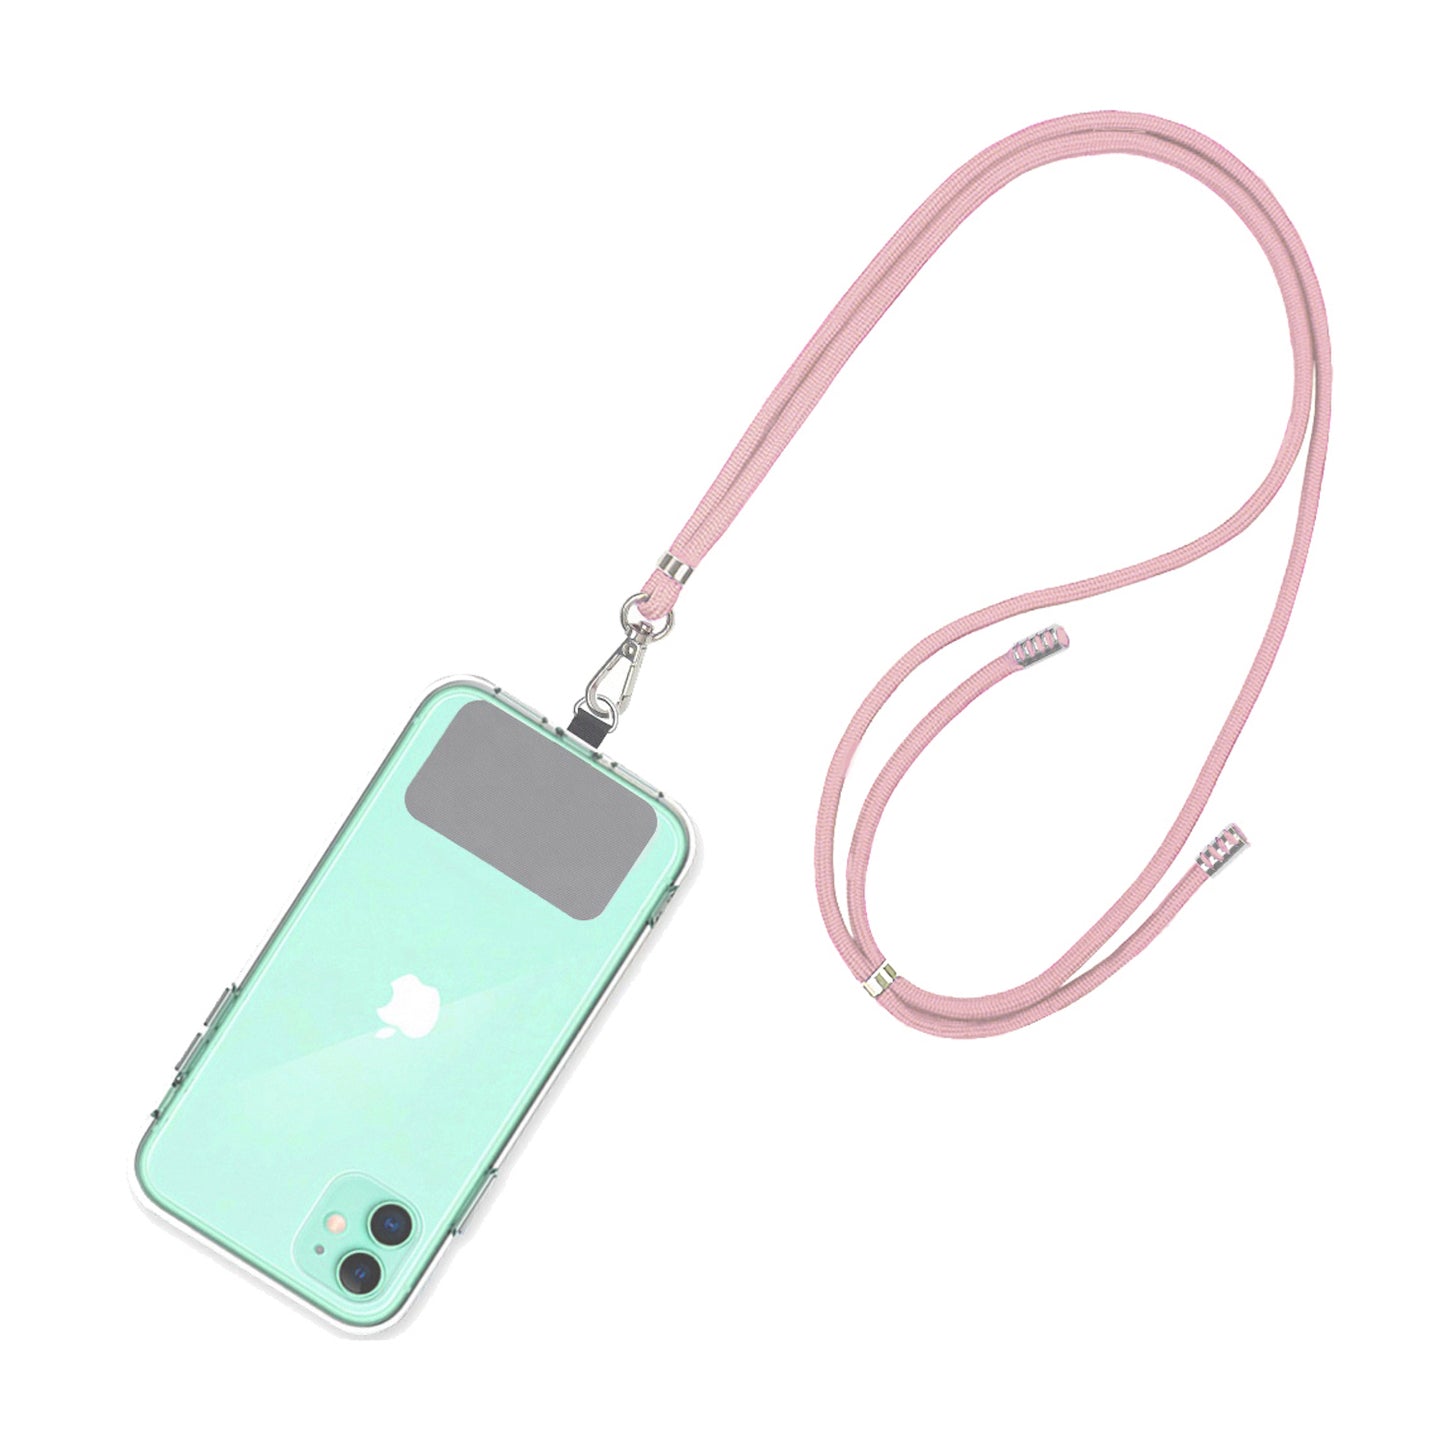 Strap para carcasa de celular universal, diseño cordón rosado.